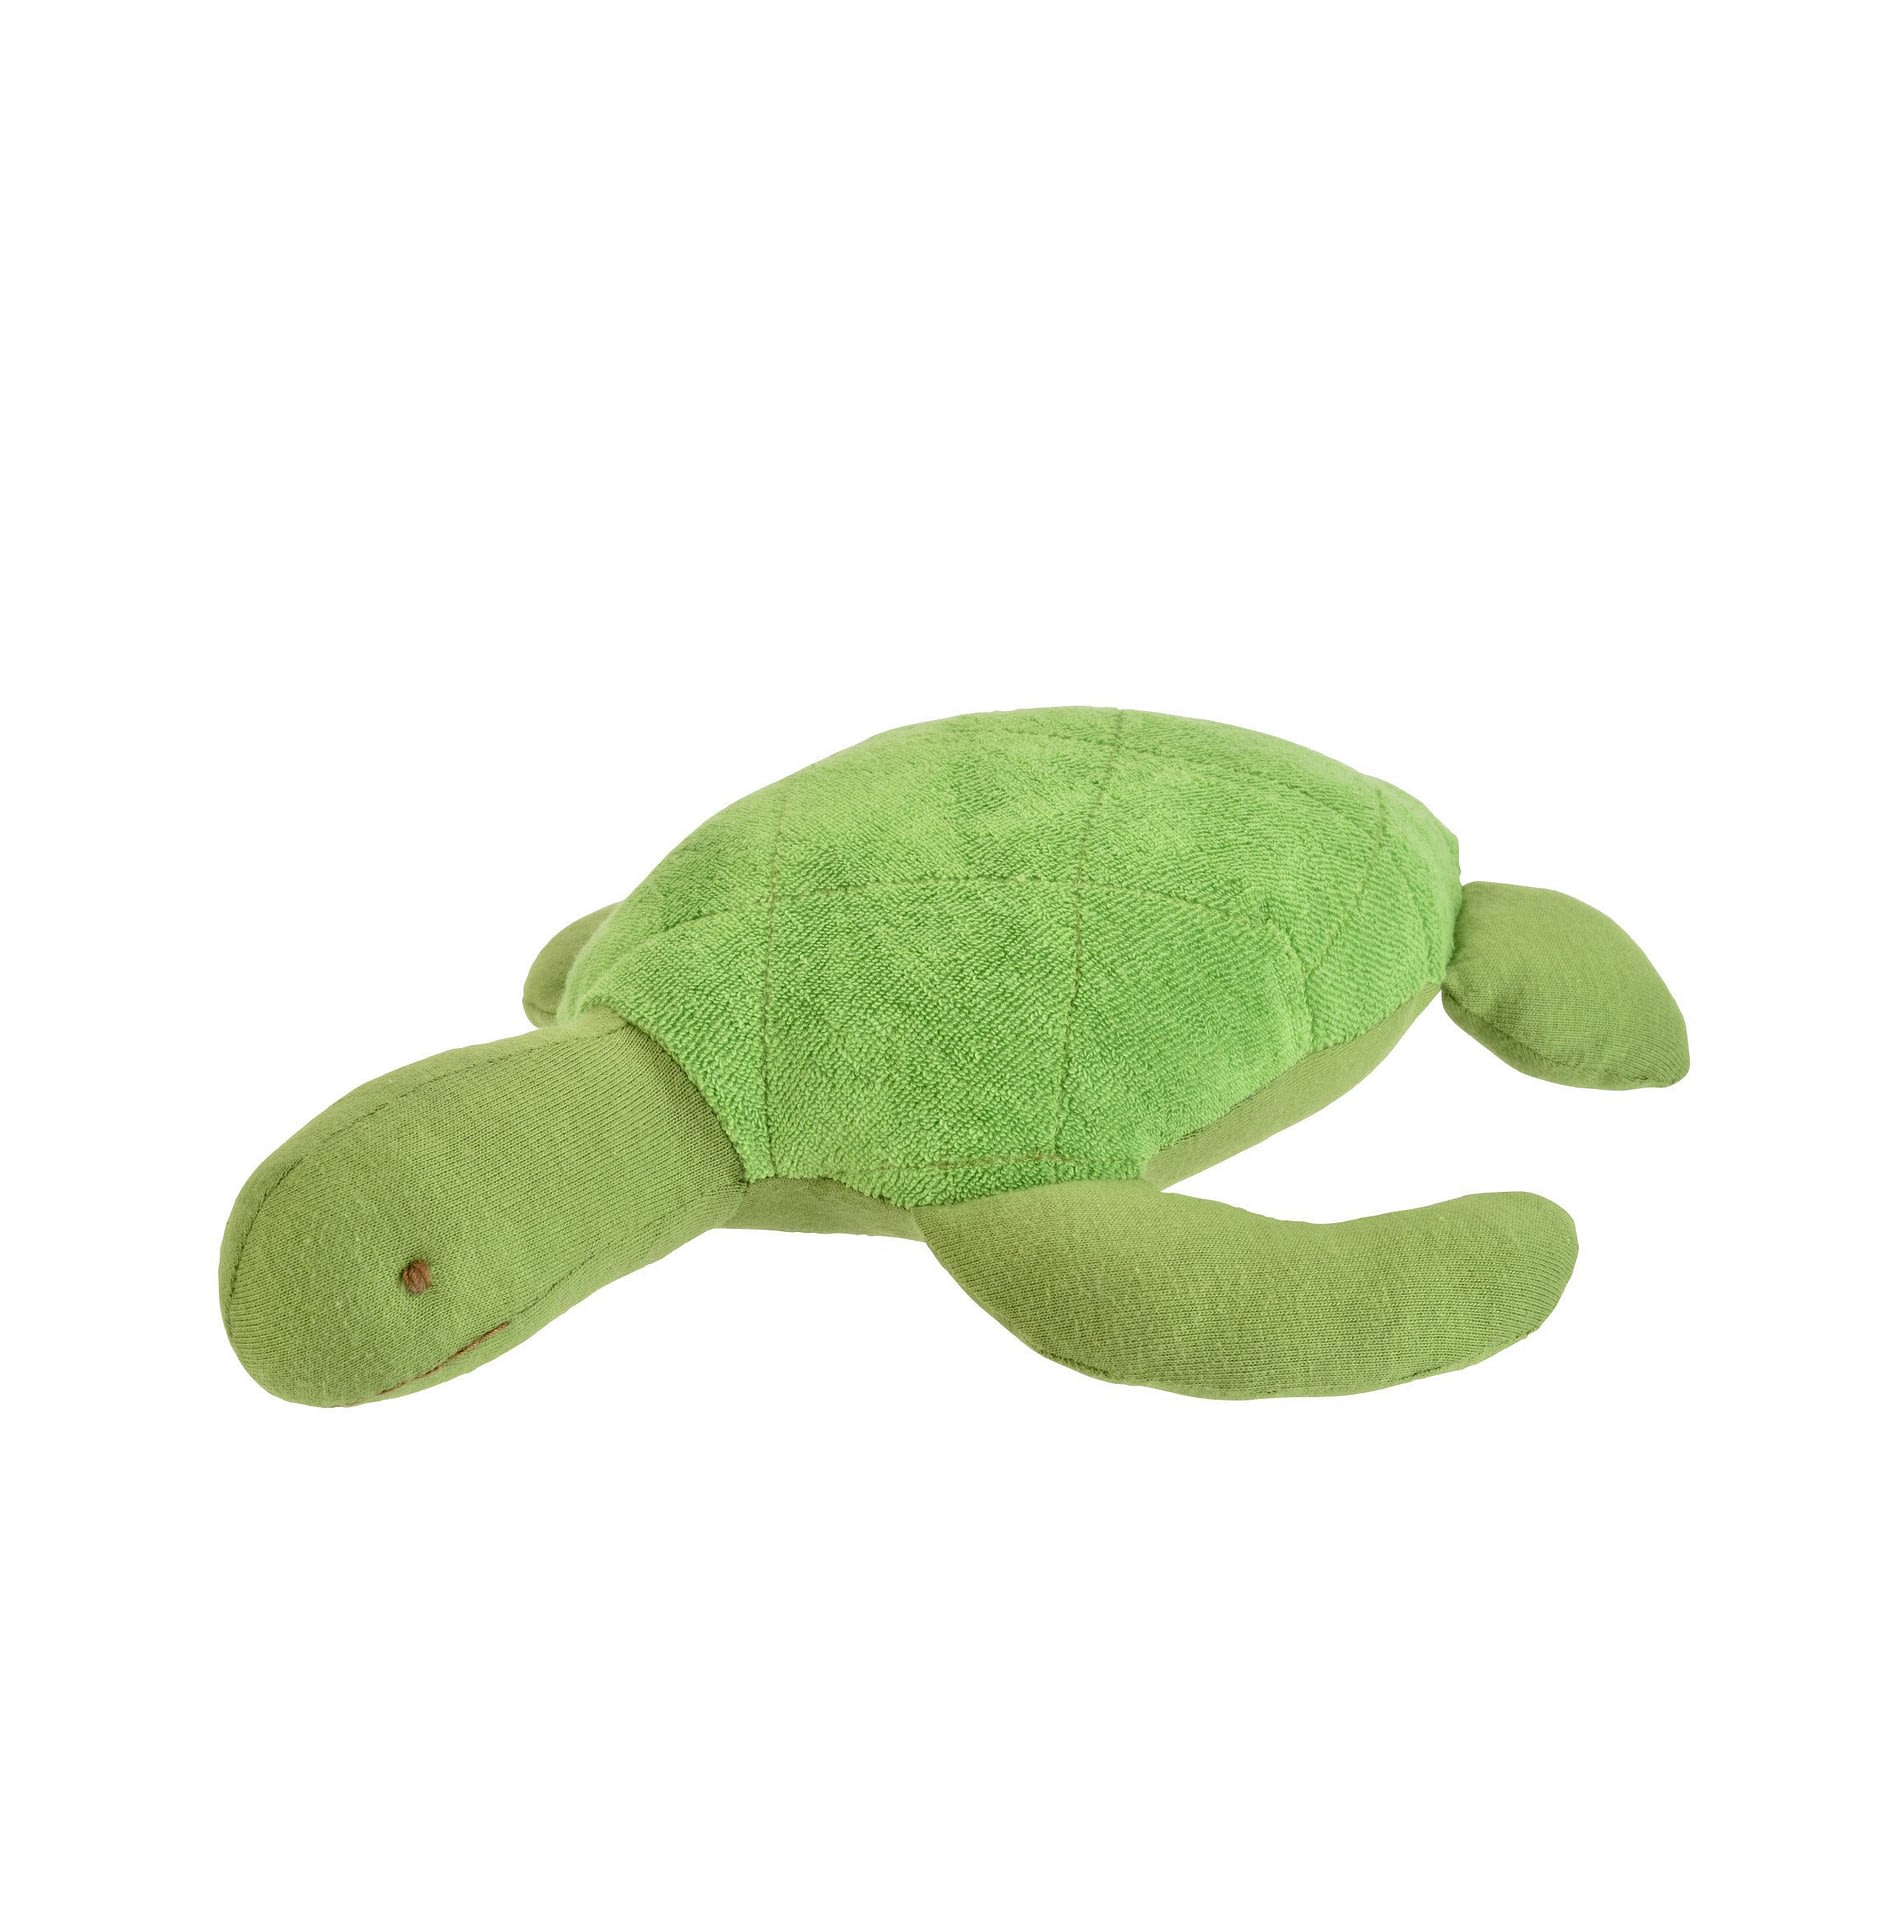 sea turtle stuffed animal